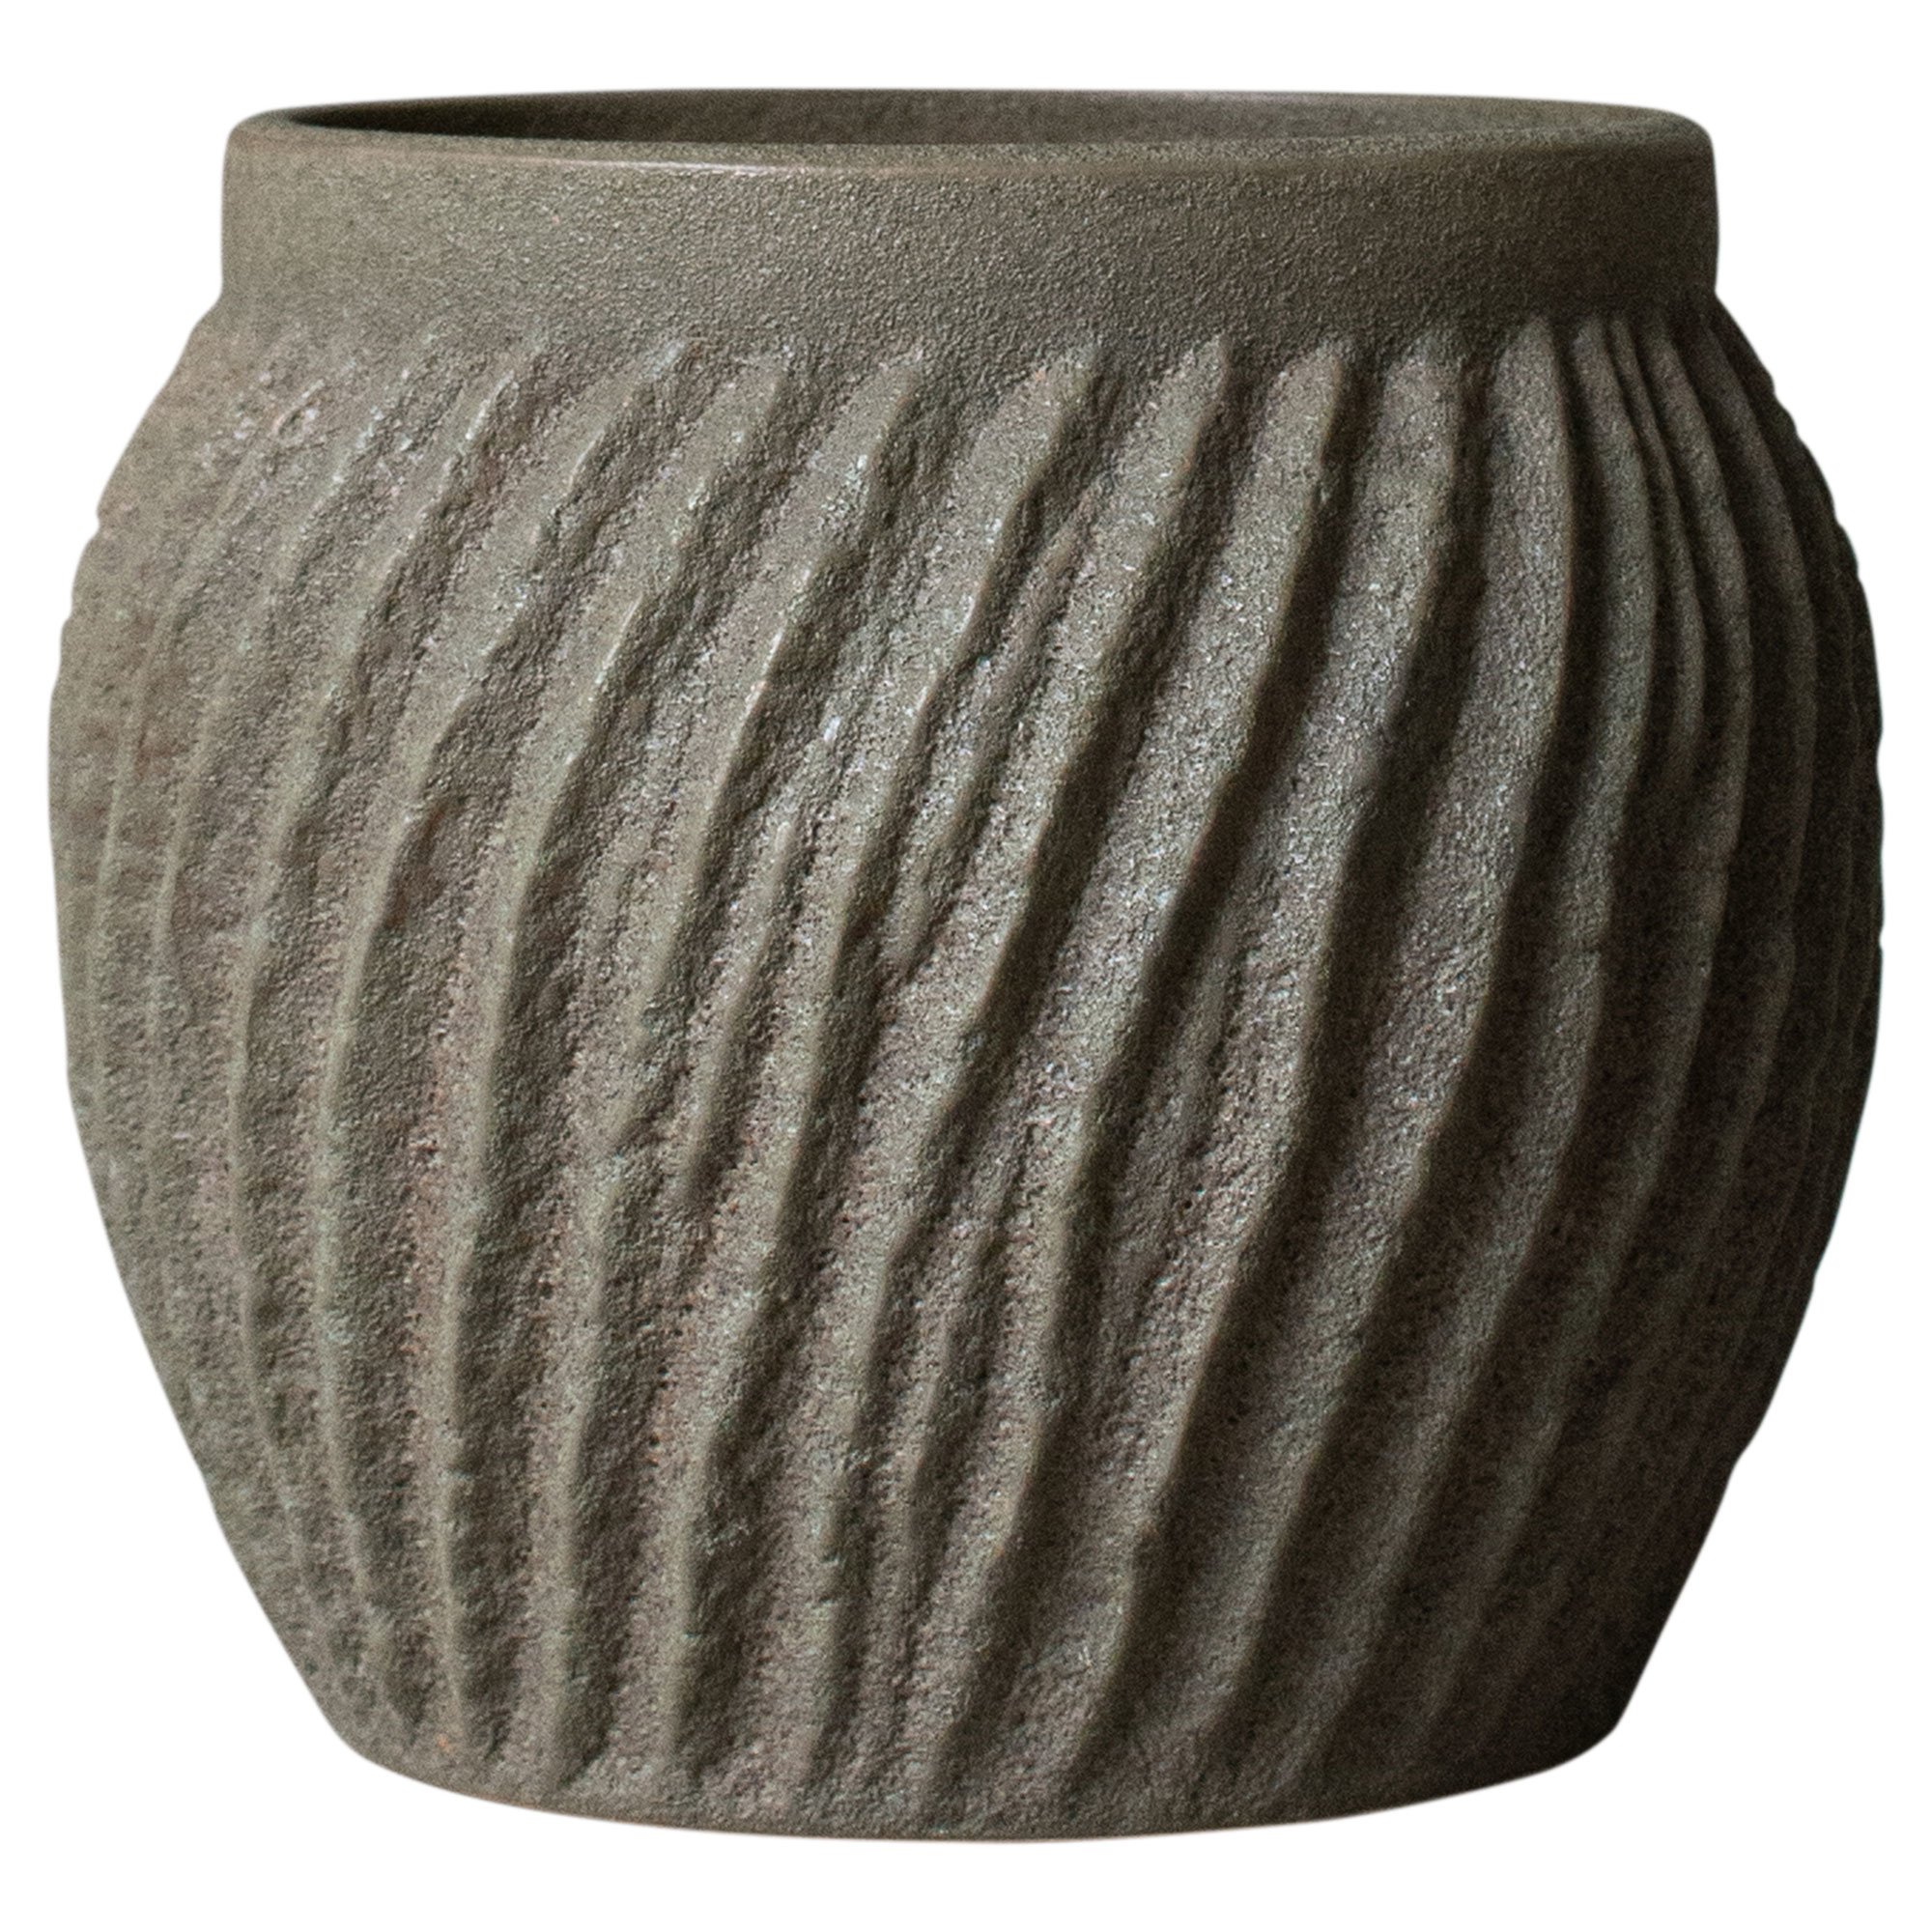 DBKD Raw vas, 19 cm, sandy dust